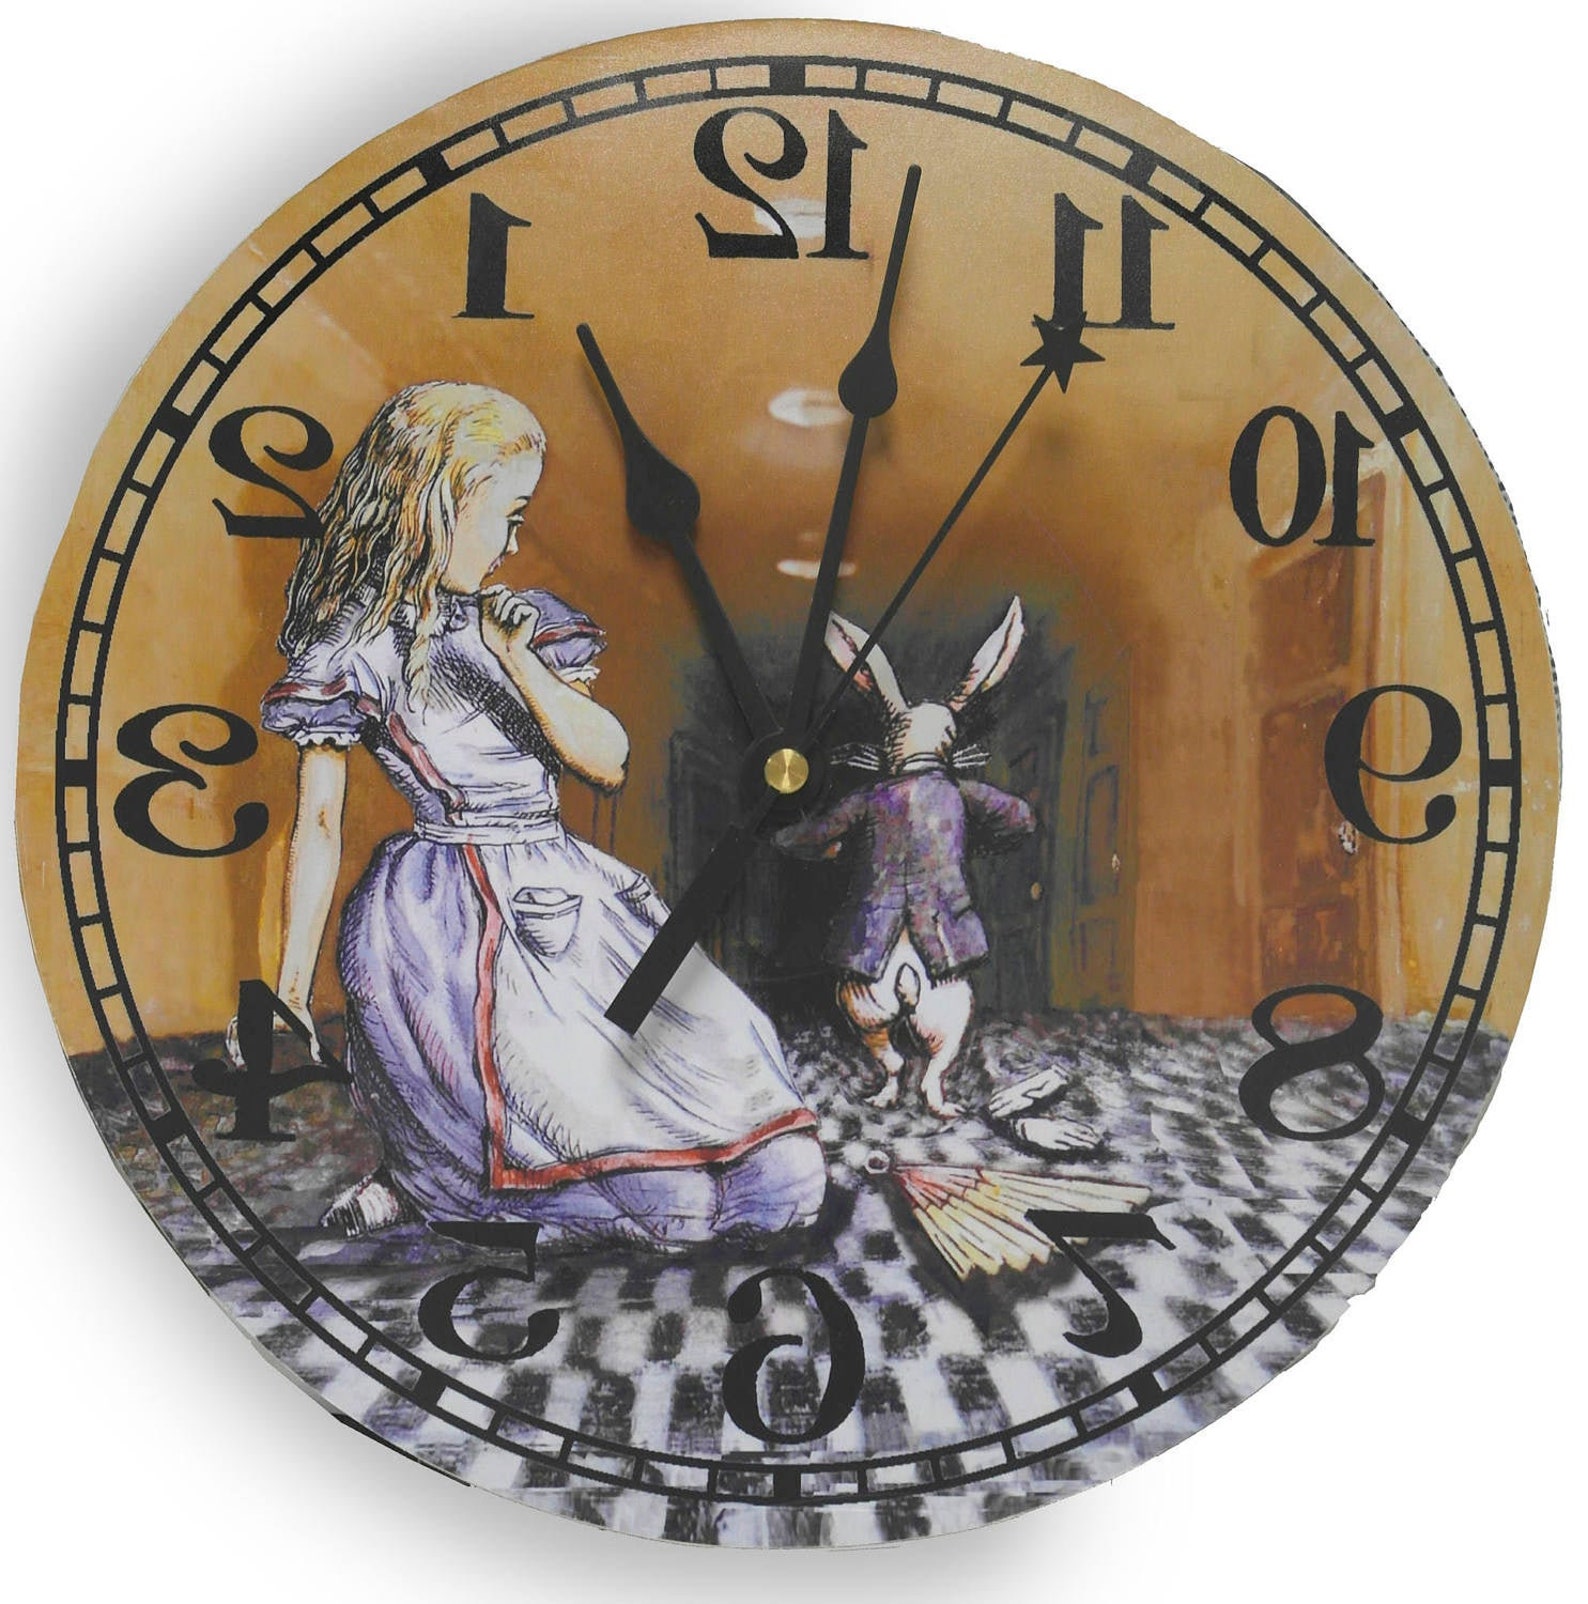 Купить алису без часов. Циферблат Алиса в стране чудес. Часы из сказки Алиса в стране чудес. Циферблат часов Алиса в стране чудес. Циферблат часов кролика из Алисы в стране чудес.